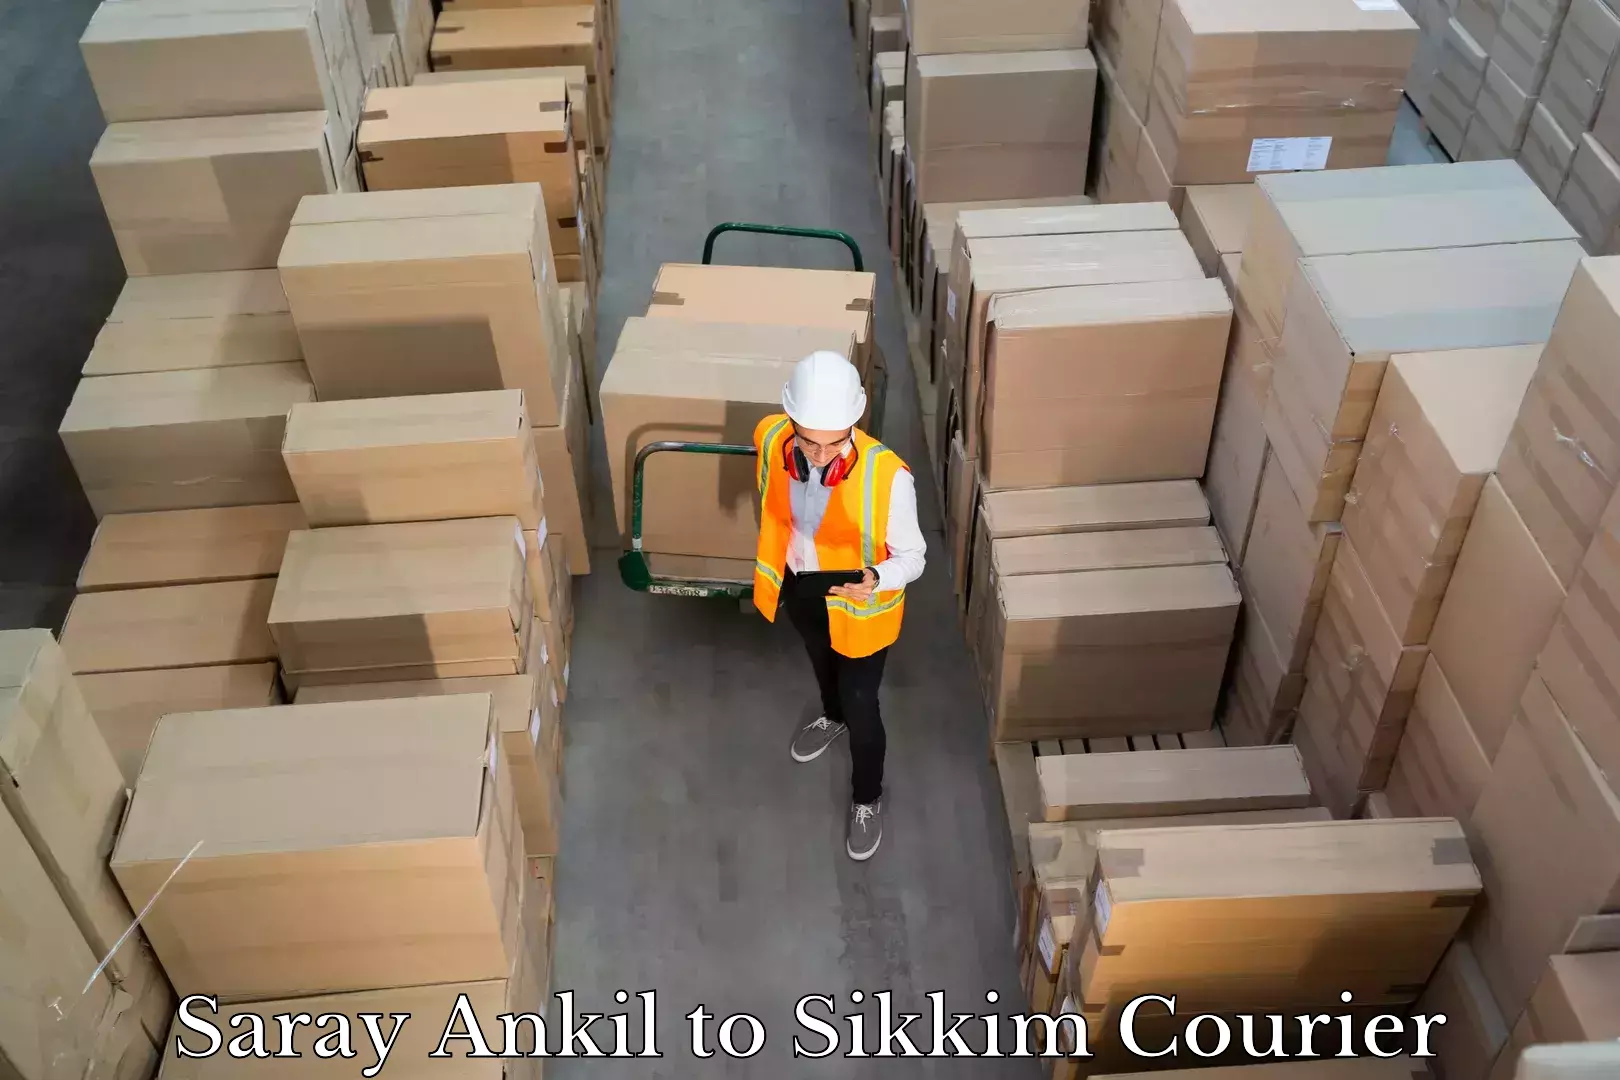 Luggage transport company Saray Ankil to Sikkim